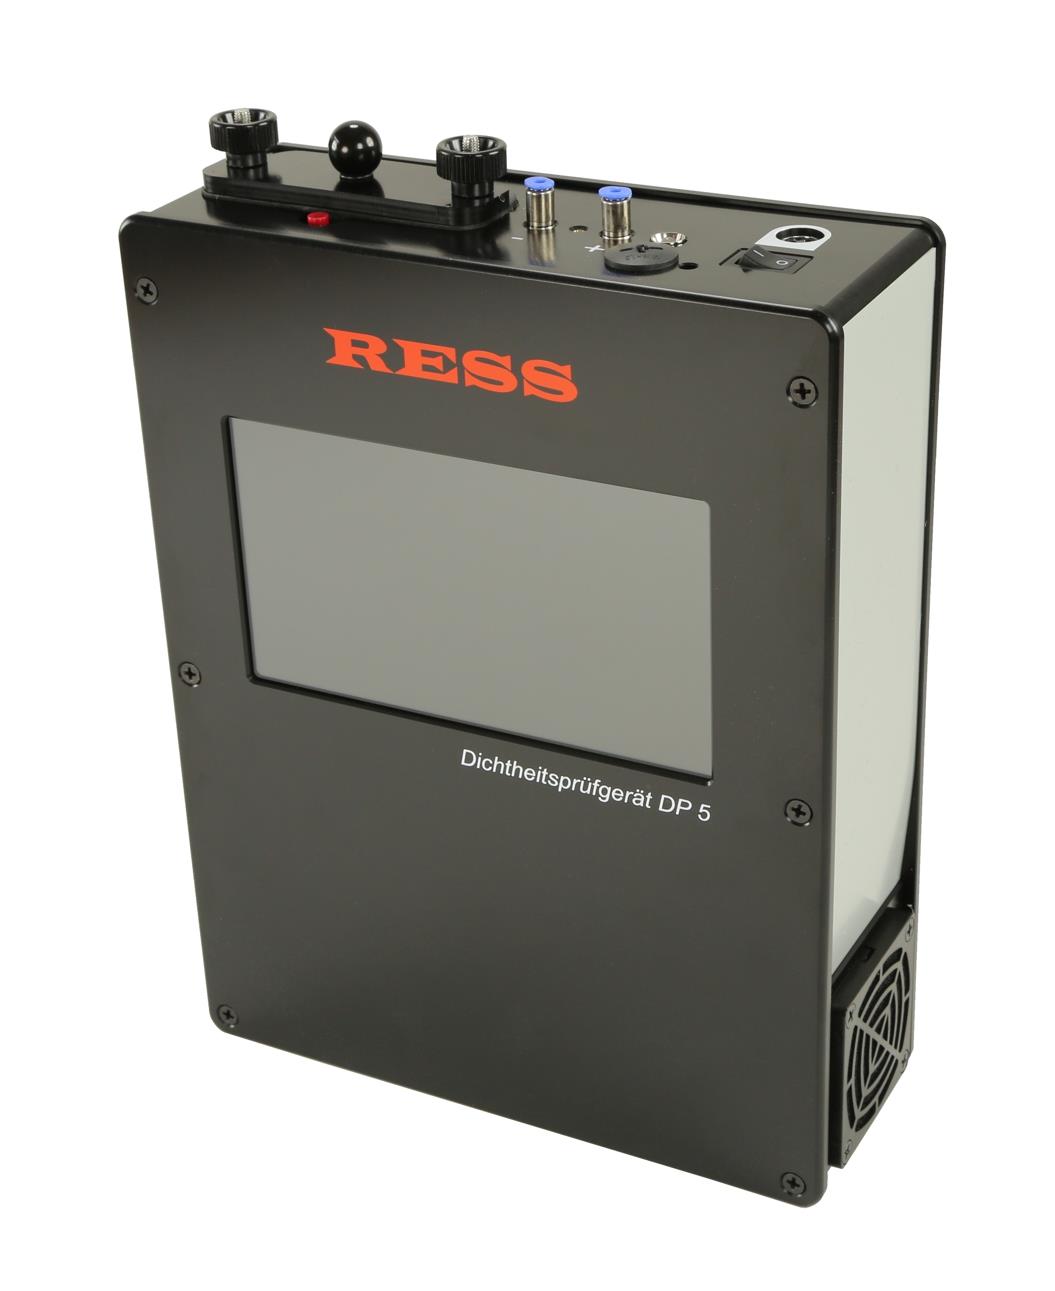 RESS-Dichtheitsprüfgerät DP5 mit Ladegerät (ohne Abdichtblasen)